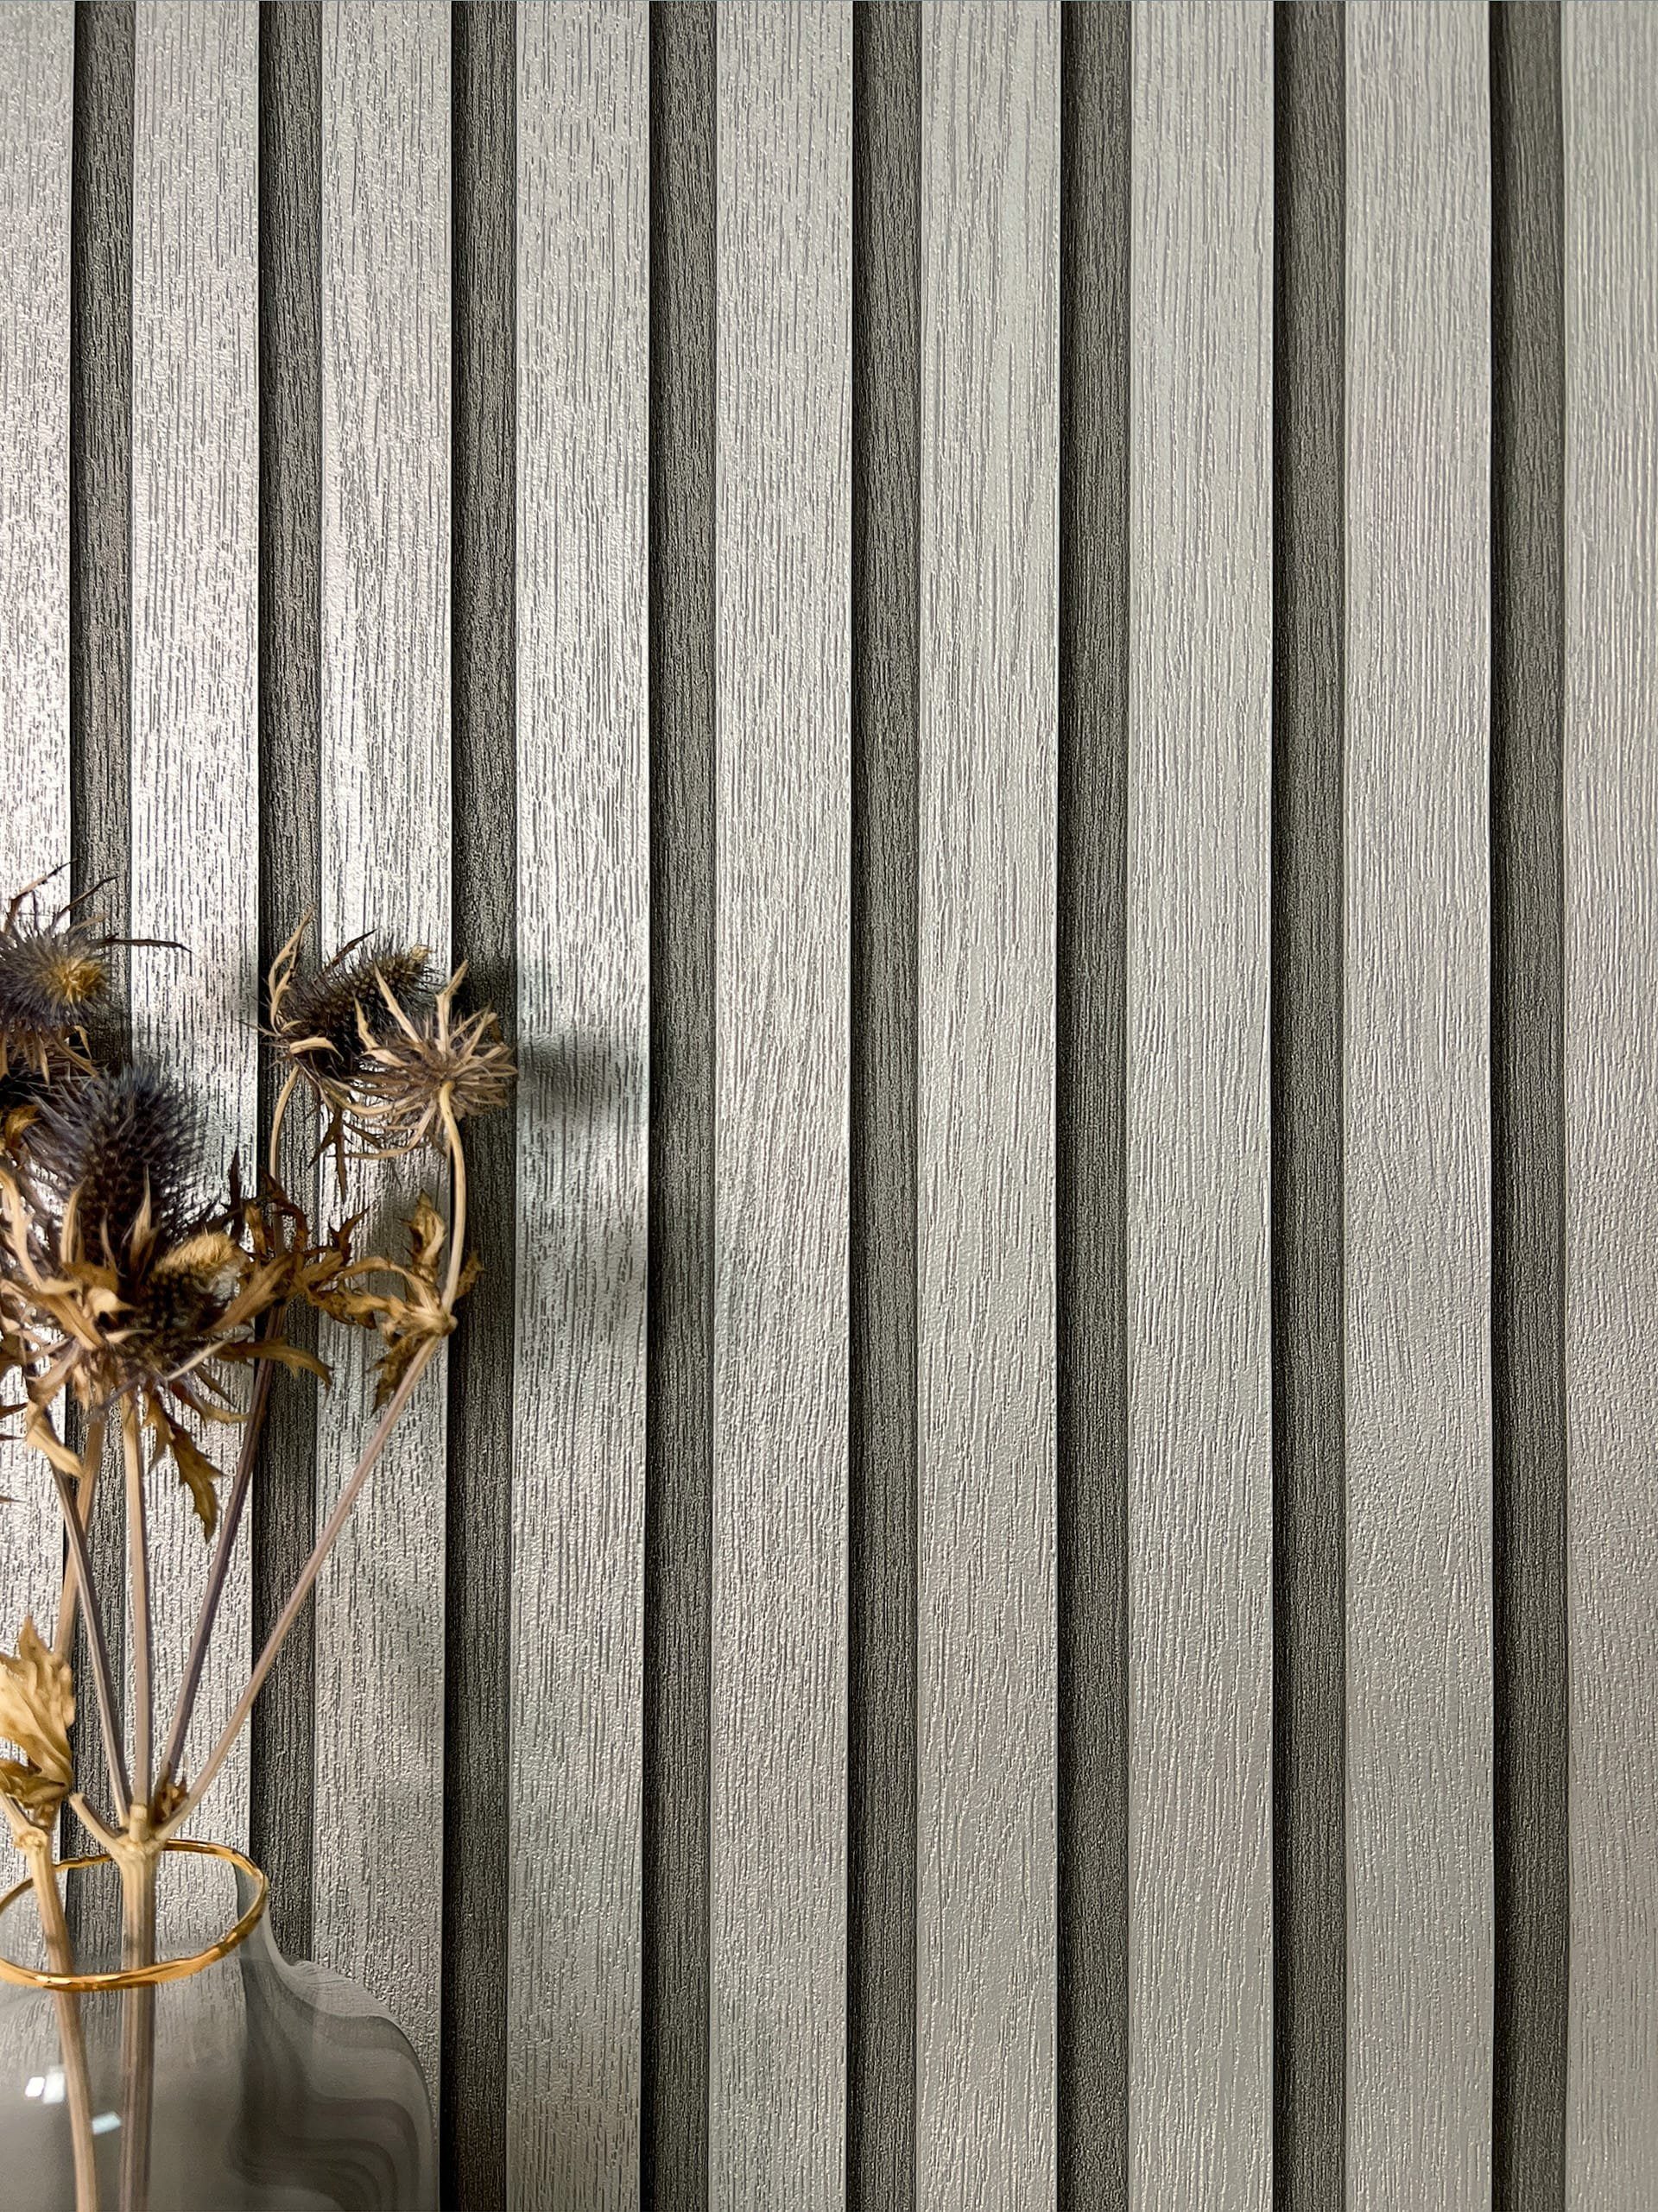 Newroom Vliestapete, Silber Tapete Glamour Paneele - Wandpaneele Holzpaneele Grau Metallic Modern Skandinavisch Lamelle Streifen für Wohnzimmer Schlafzimmer Küche